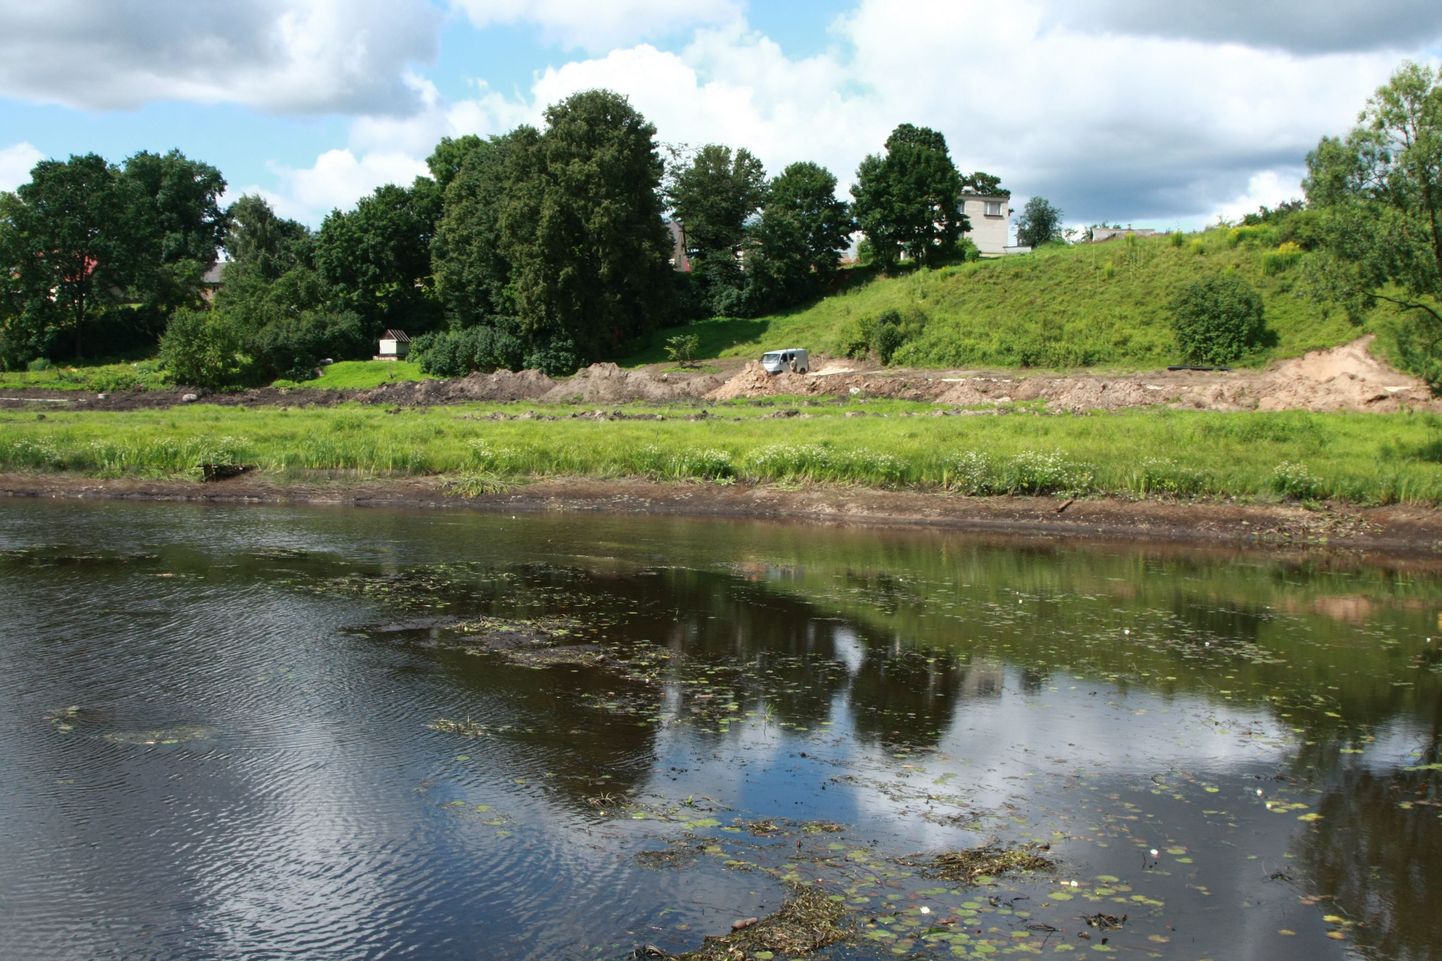 Pedeli jõgi peale seda kui Läti poolel avati tammi lüüsid ja paisjärve veetase oluliselt alanes.